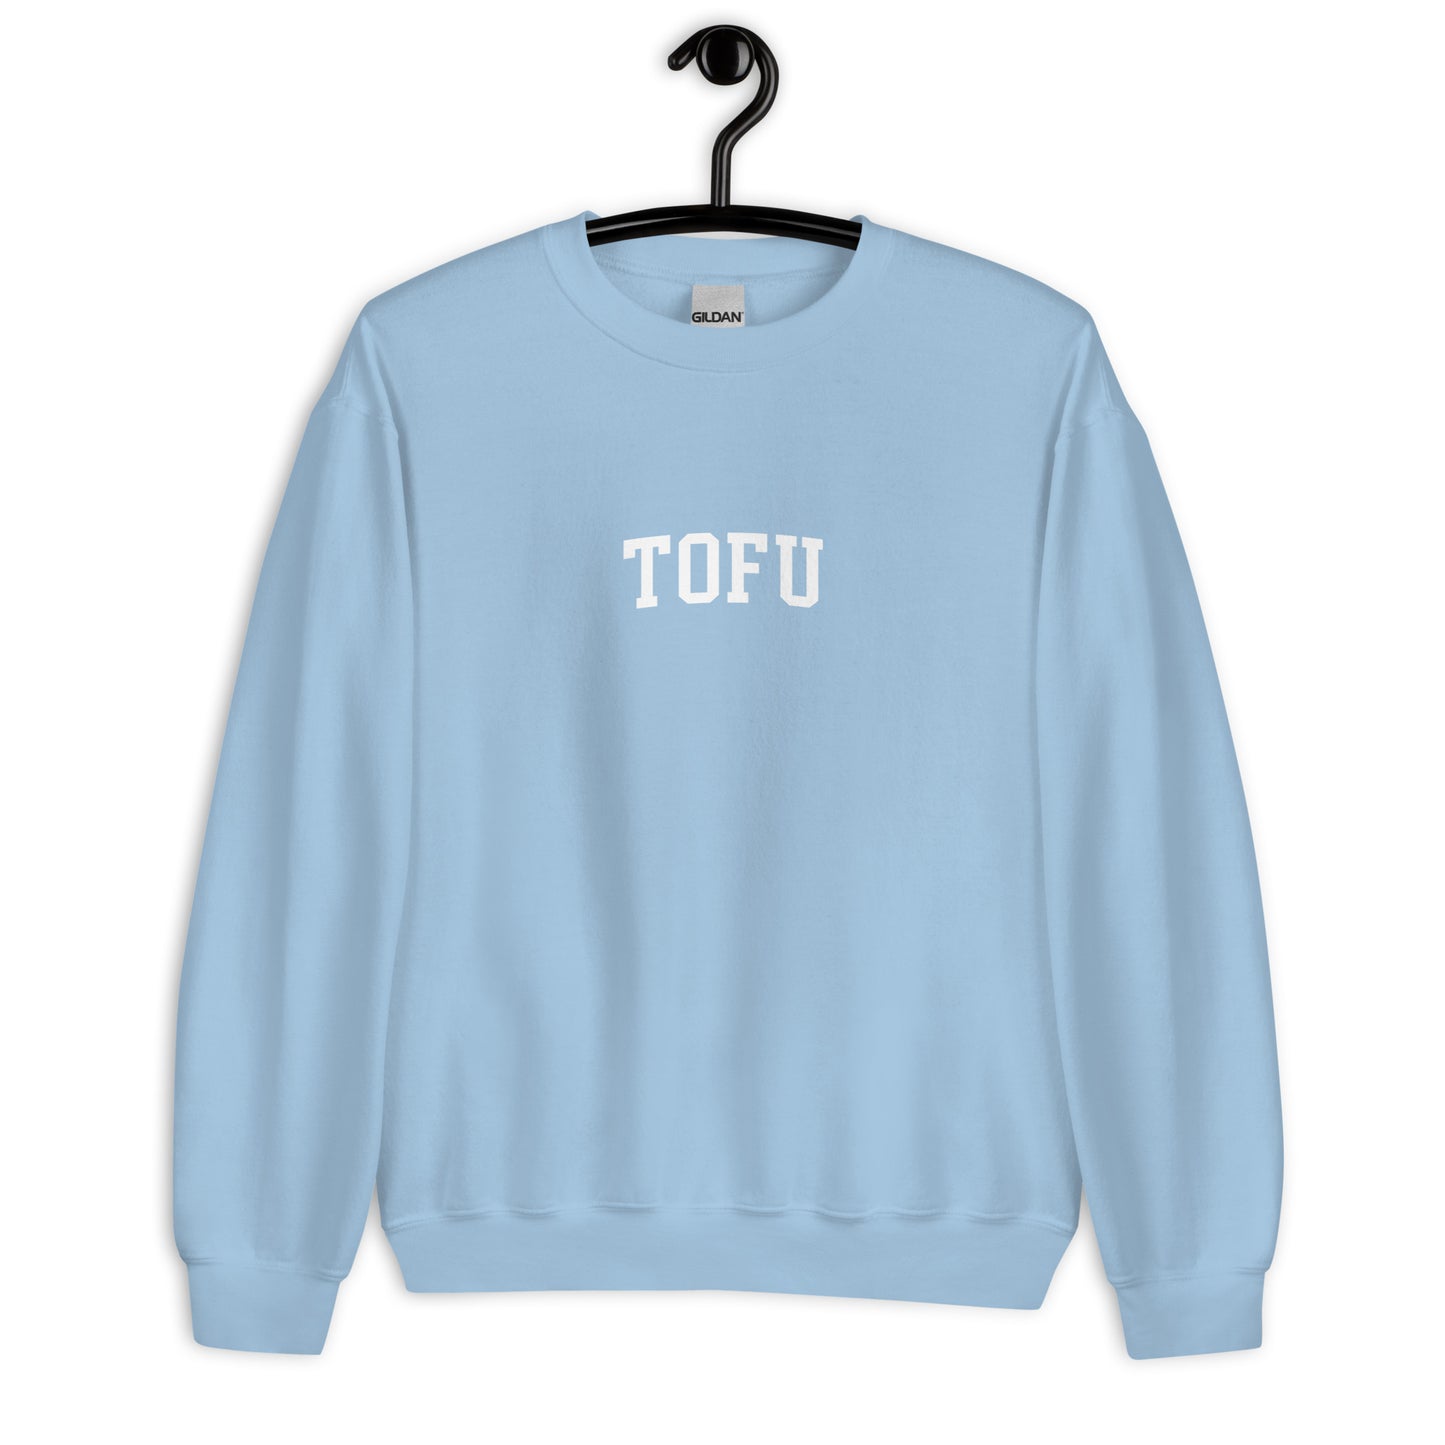 Tofu Sweatshirt - Arched Font